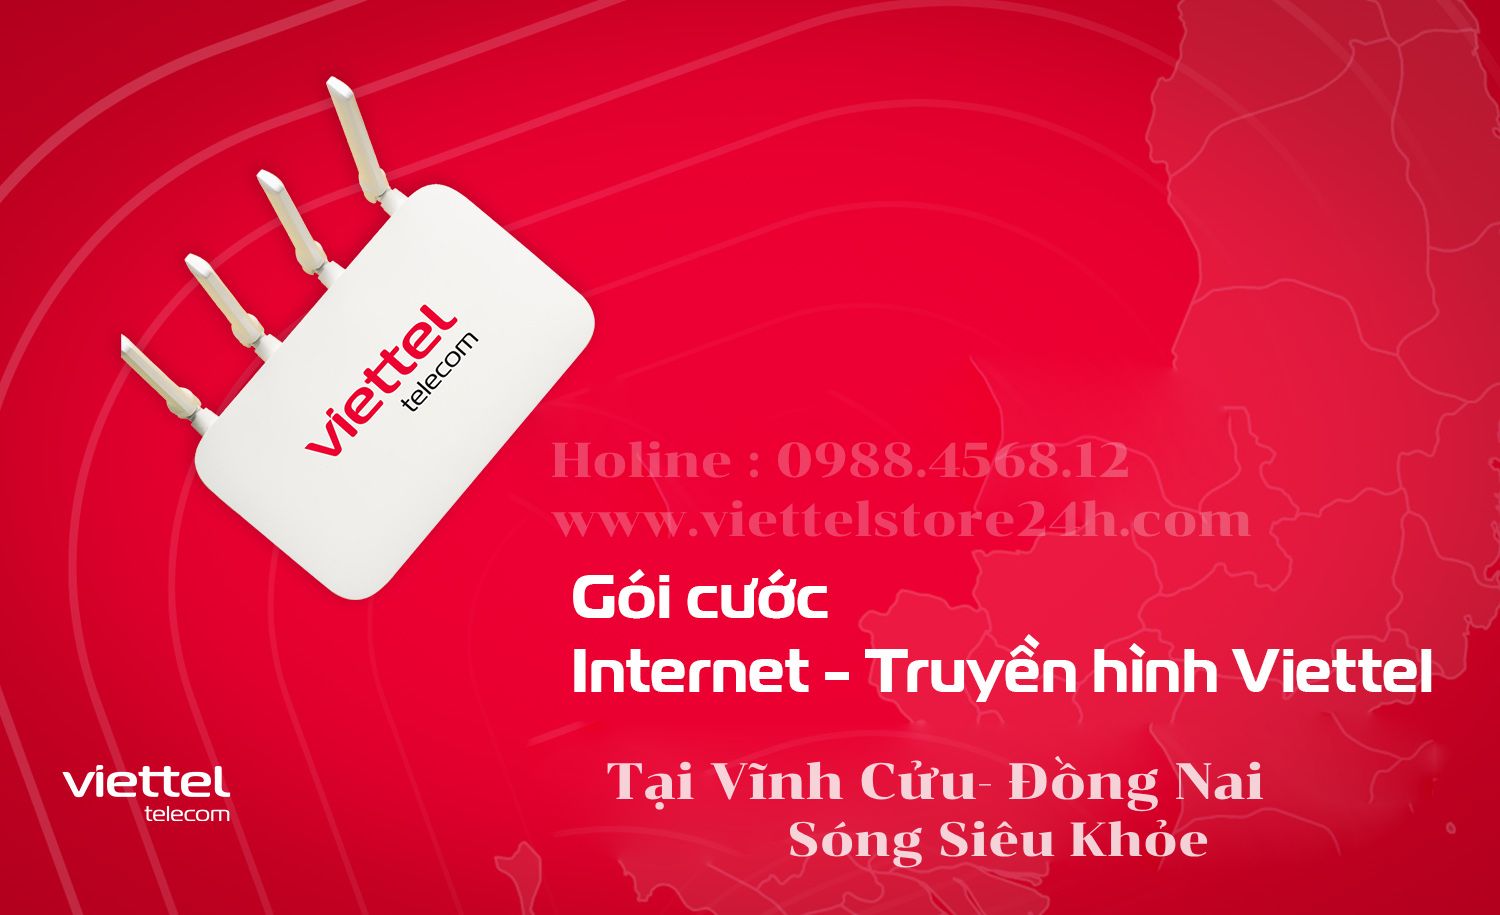 Gói cước internet - Truyền hình Viettel Tại Vĩnh Cửu - Đồng Nai